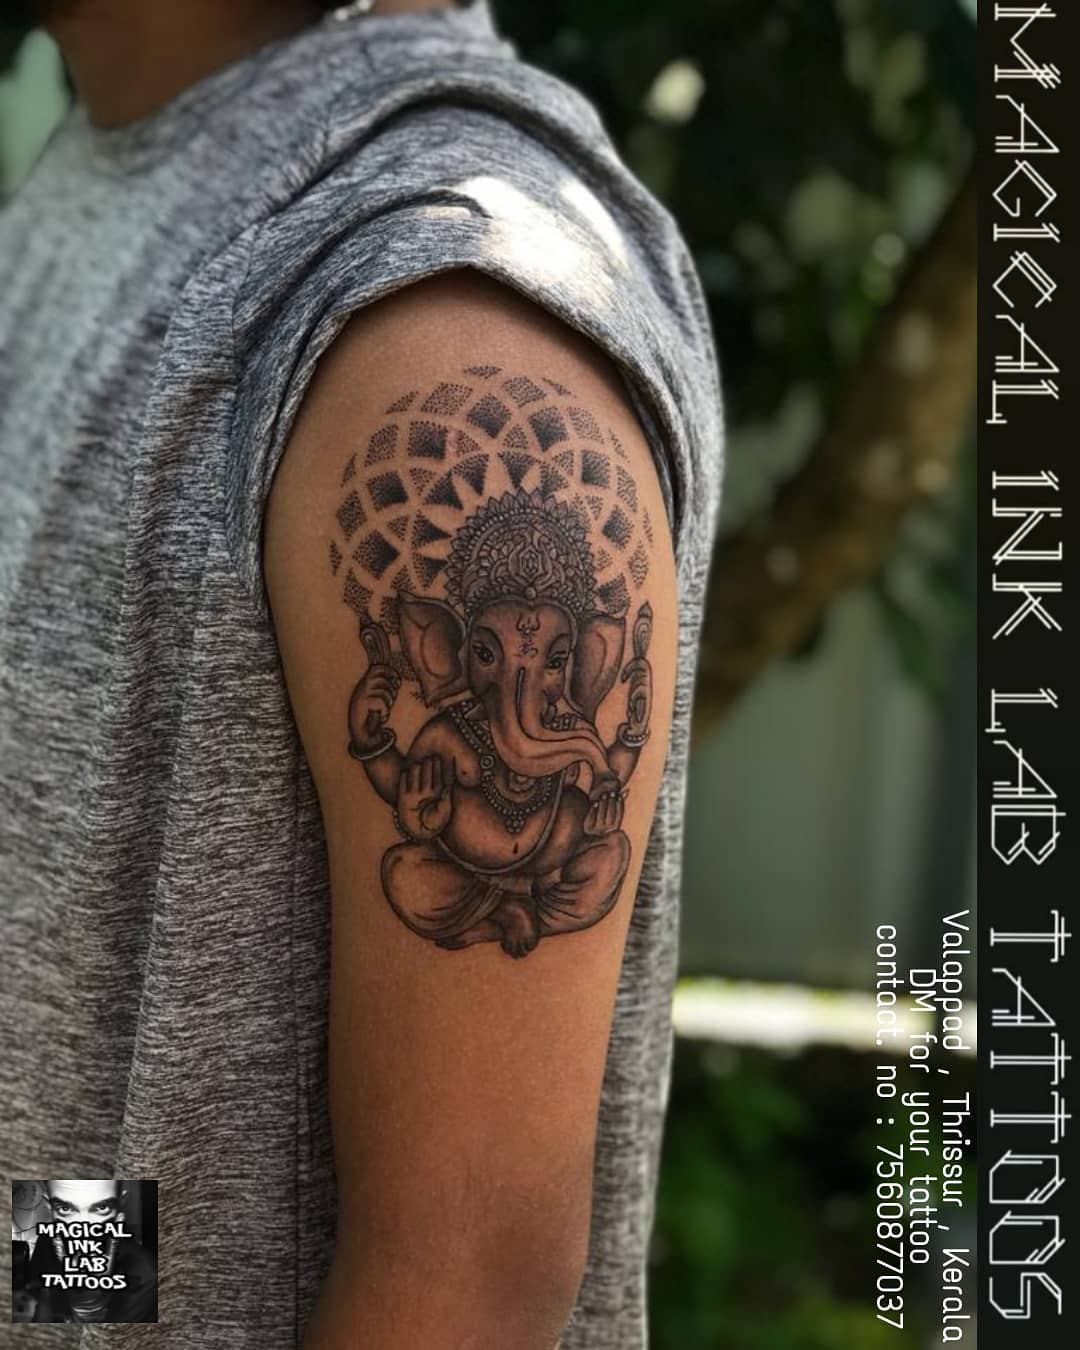 Killer Ink Tattoo on X: 